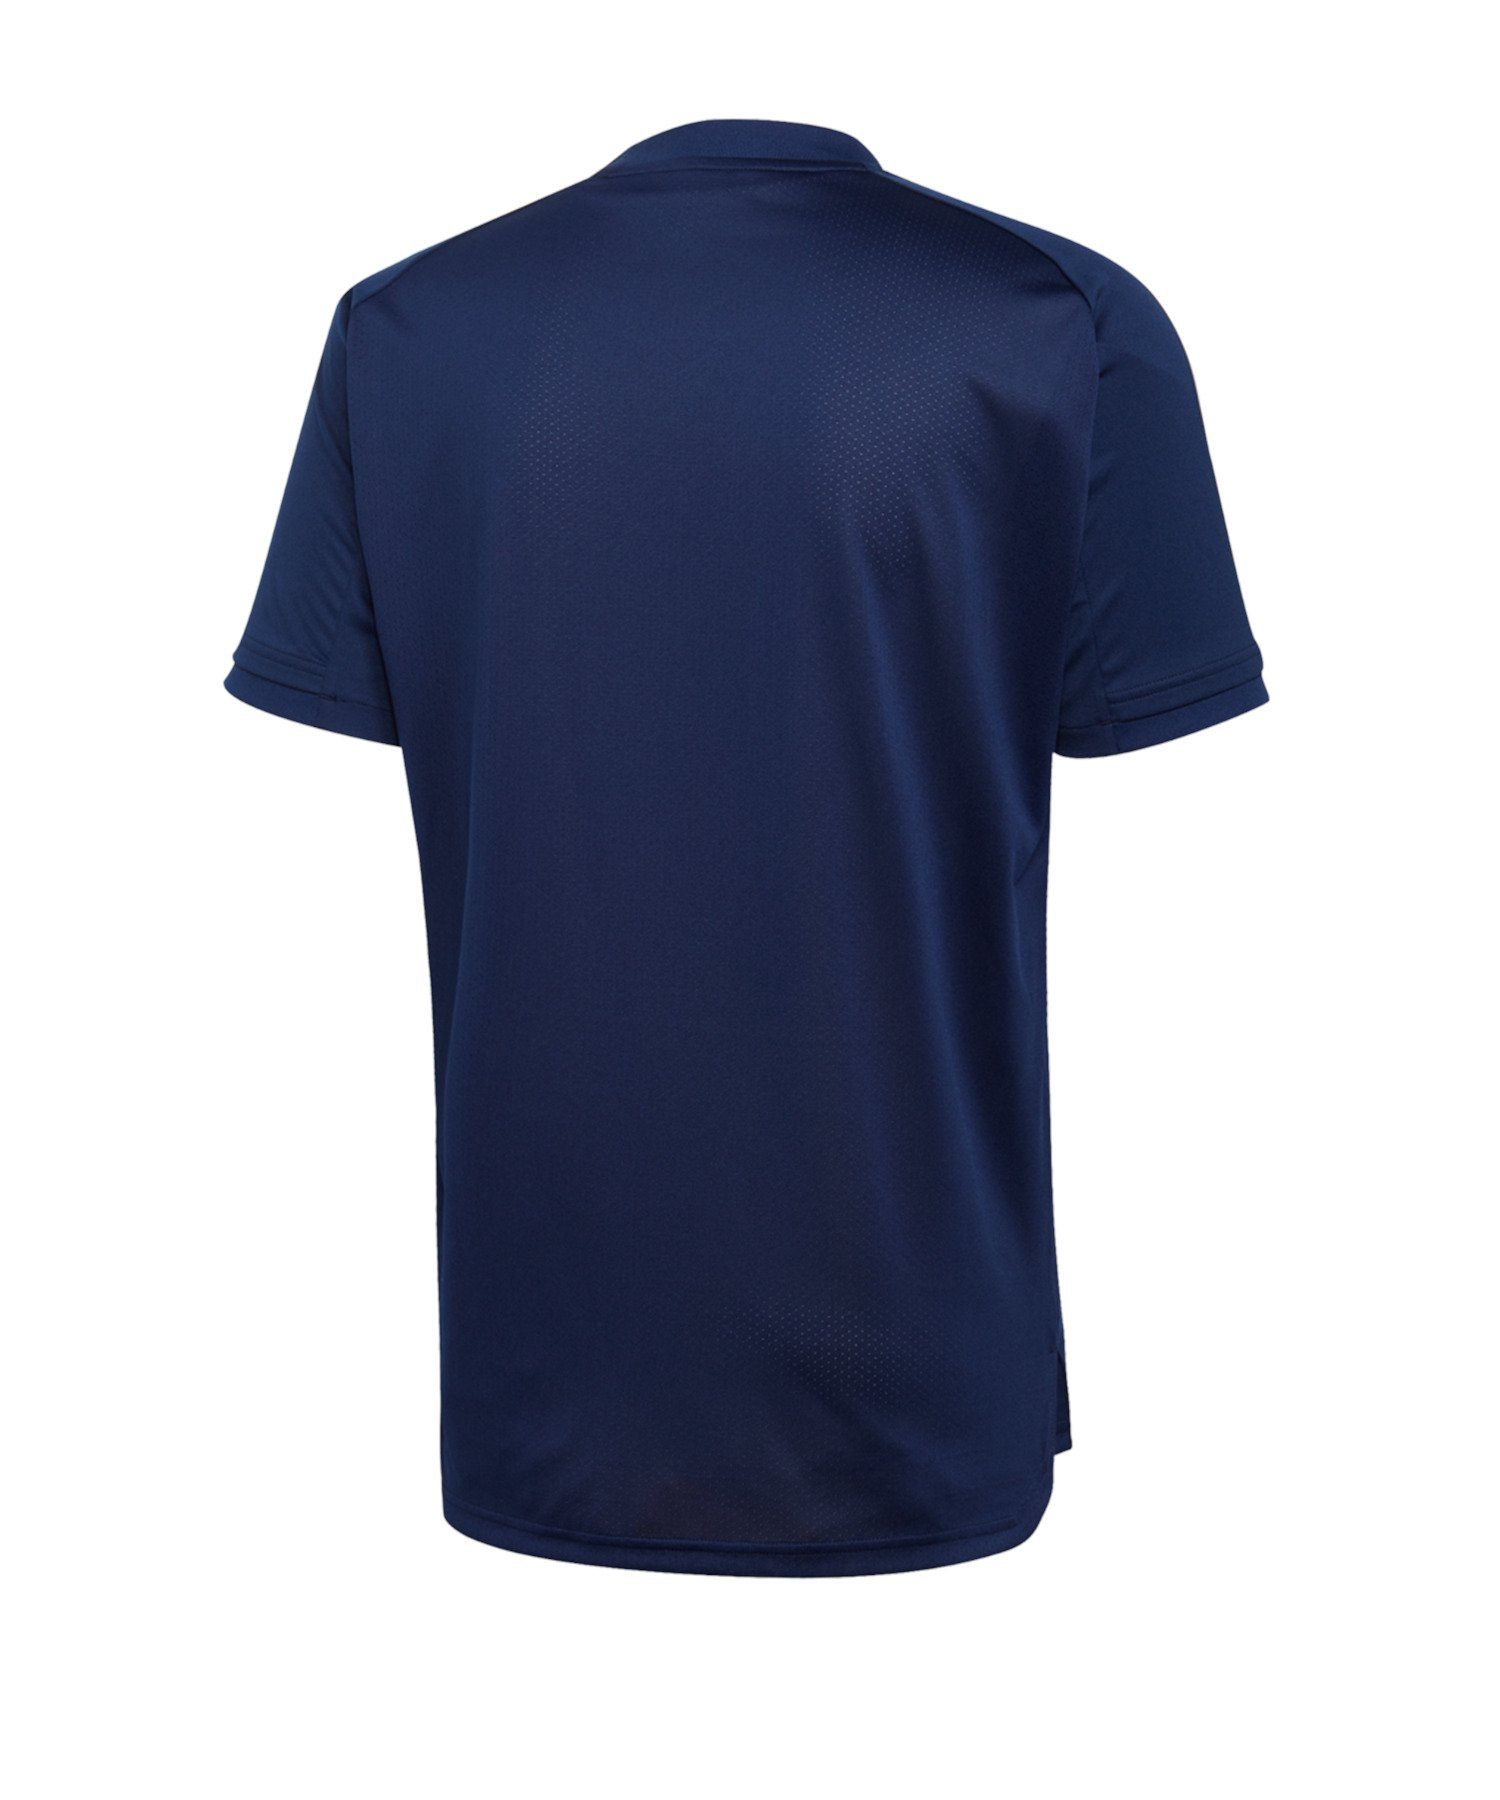 20 TR default adidas blau kurzarm Condivo Performance T-Shirt Shirt